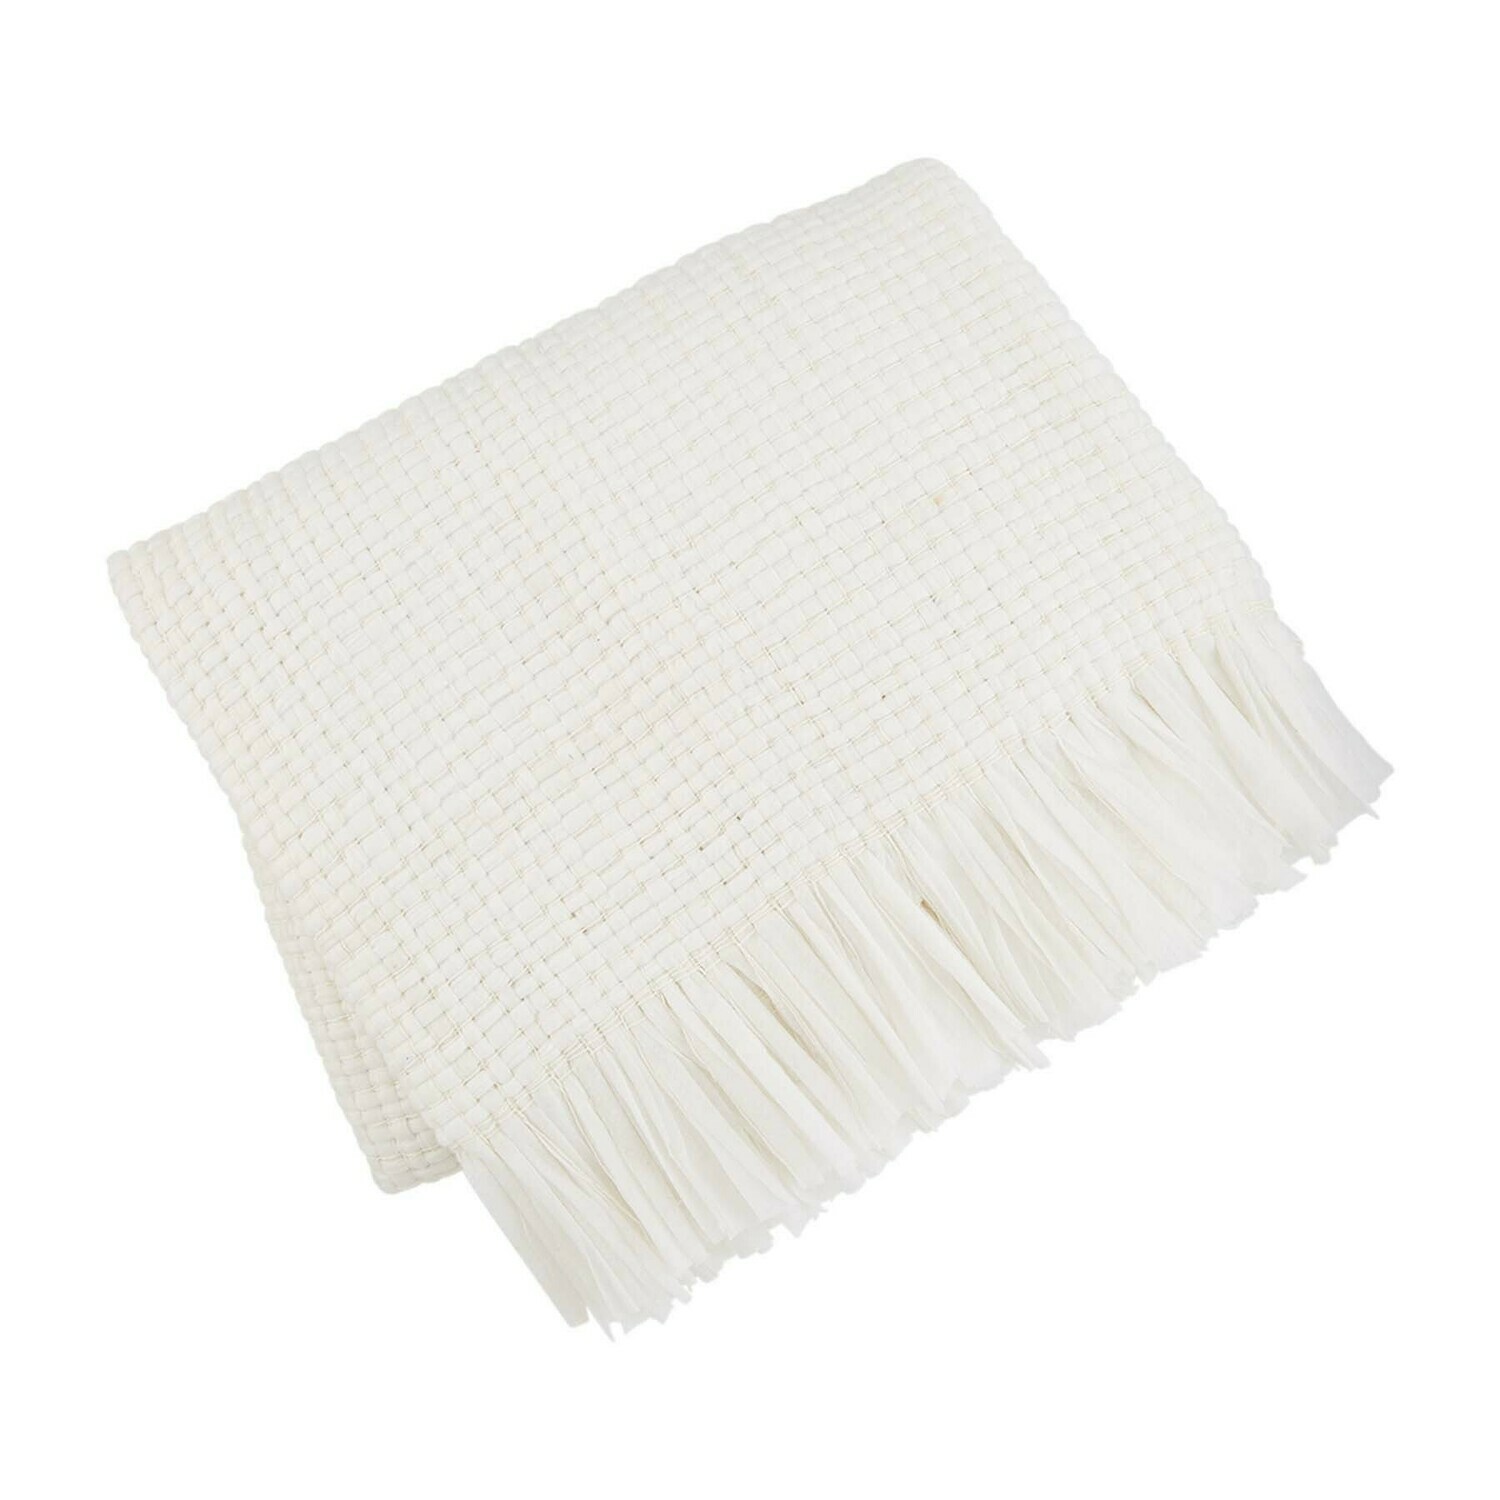 White Fringe Blanket #41000072W